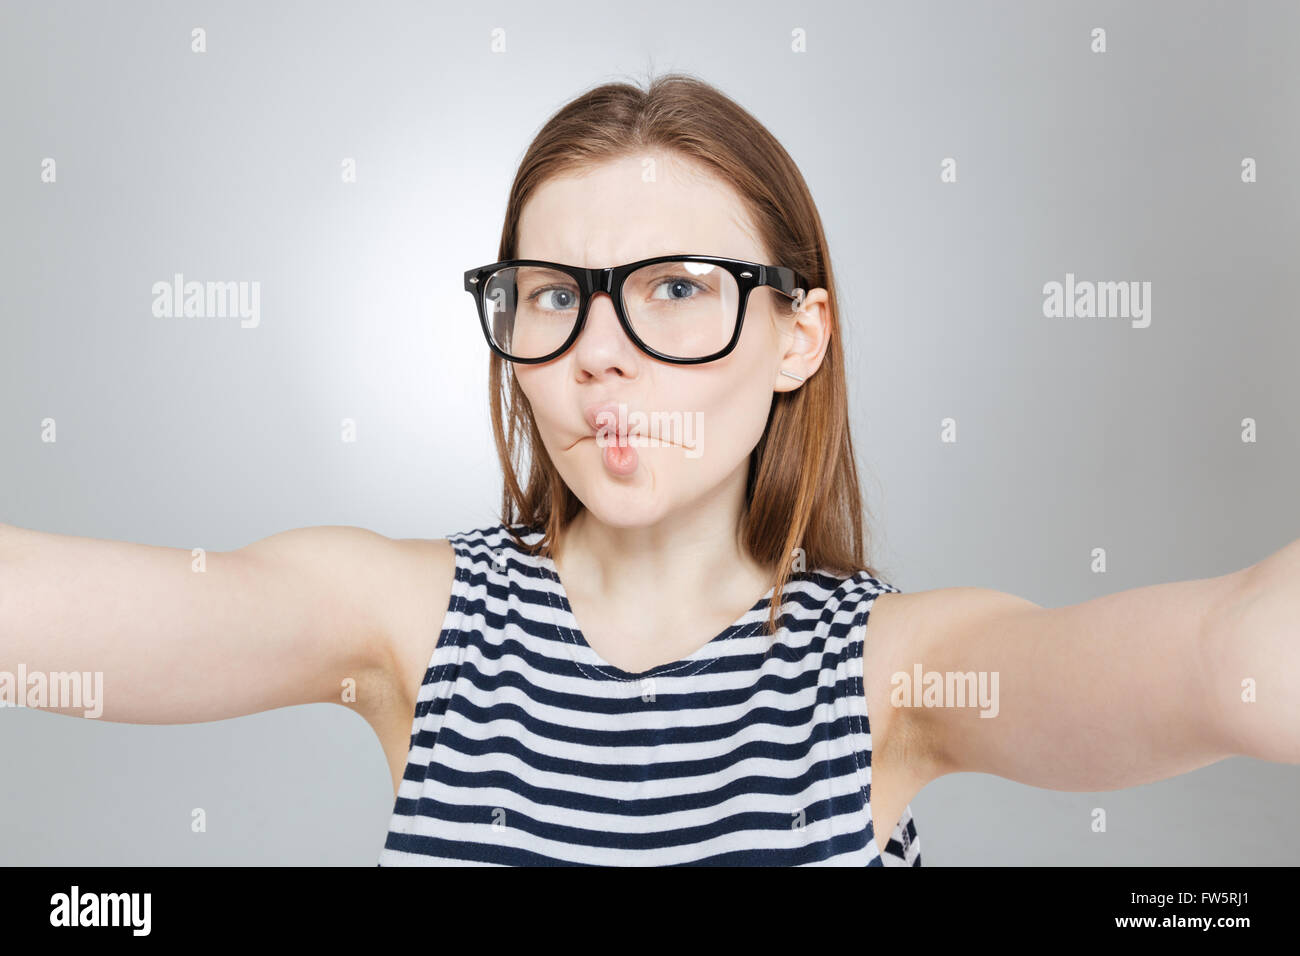 Funny carina ragazza adolescente in bicchieri rendere divertente la faccia e prendendo selfie Foto Stock